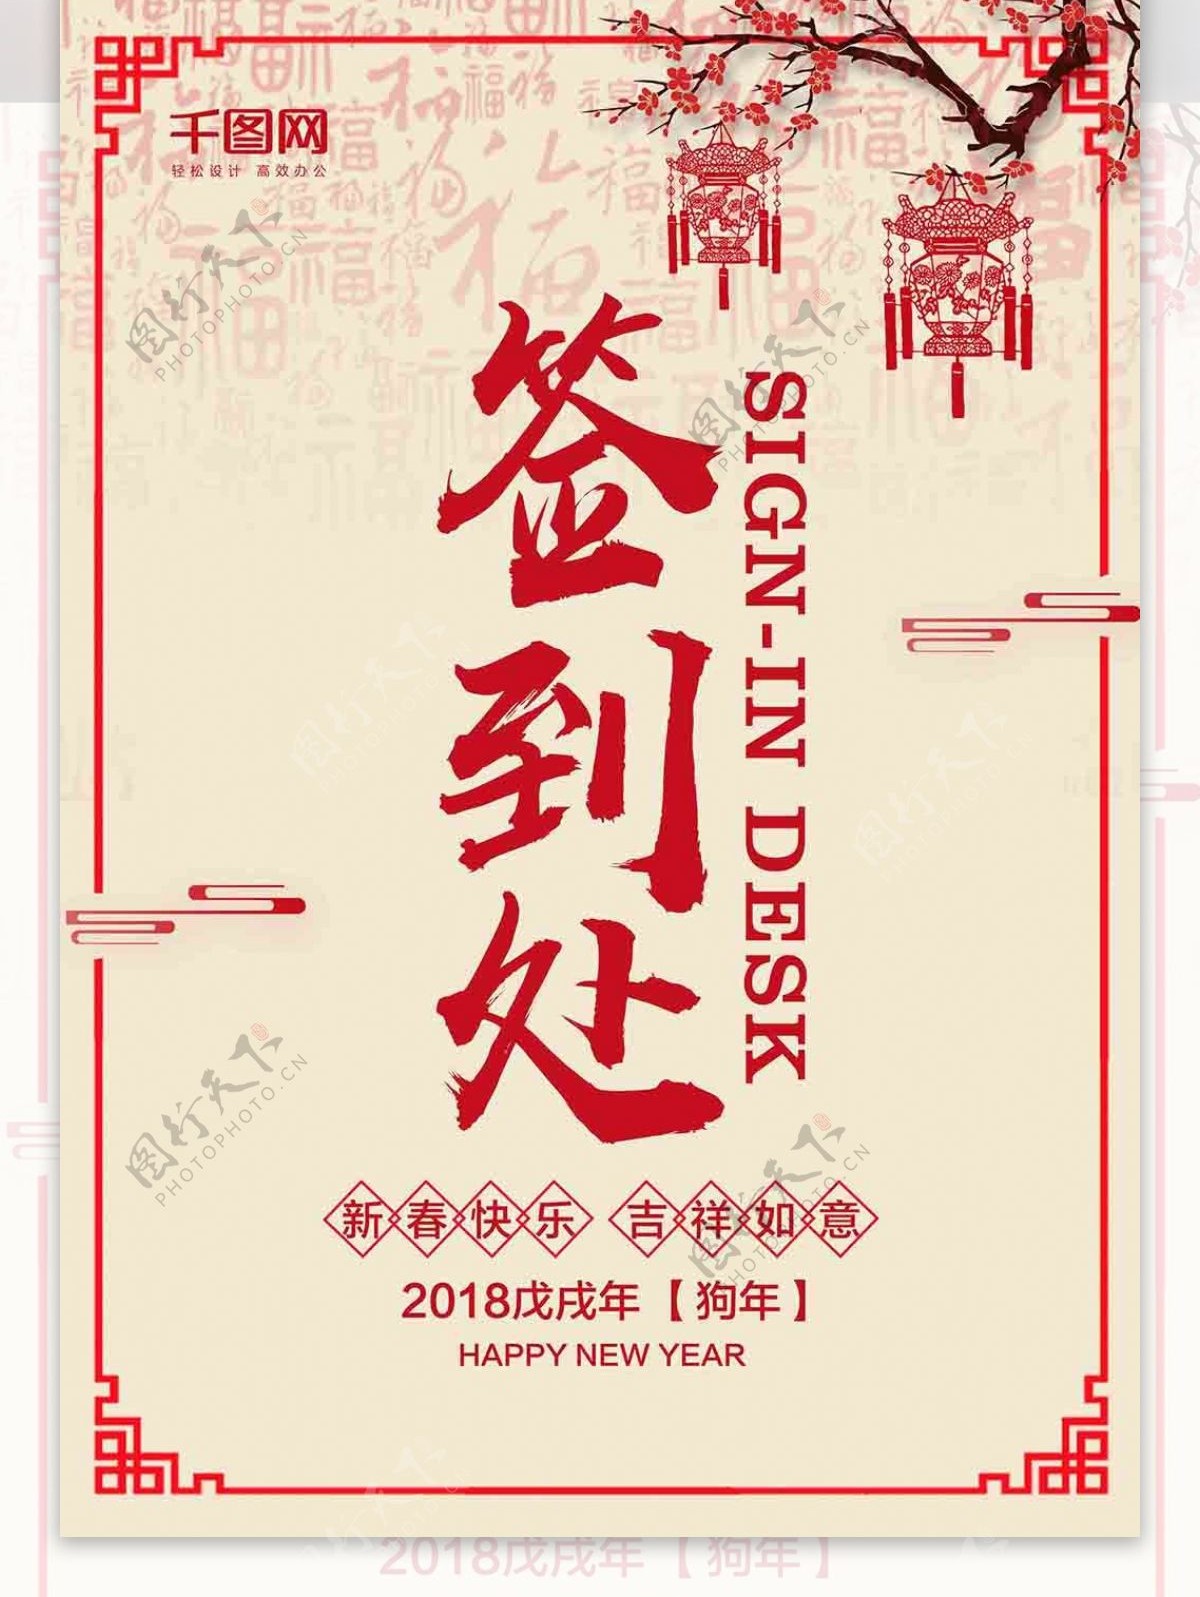 中国风红色剪纸桌卡签到处设计